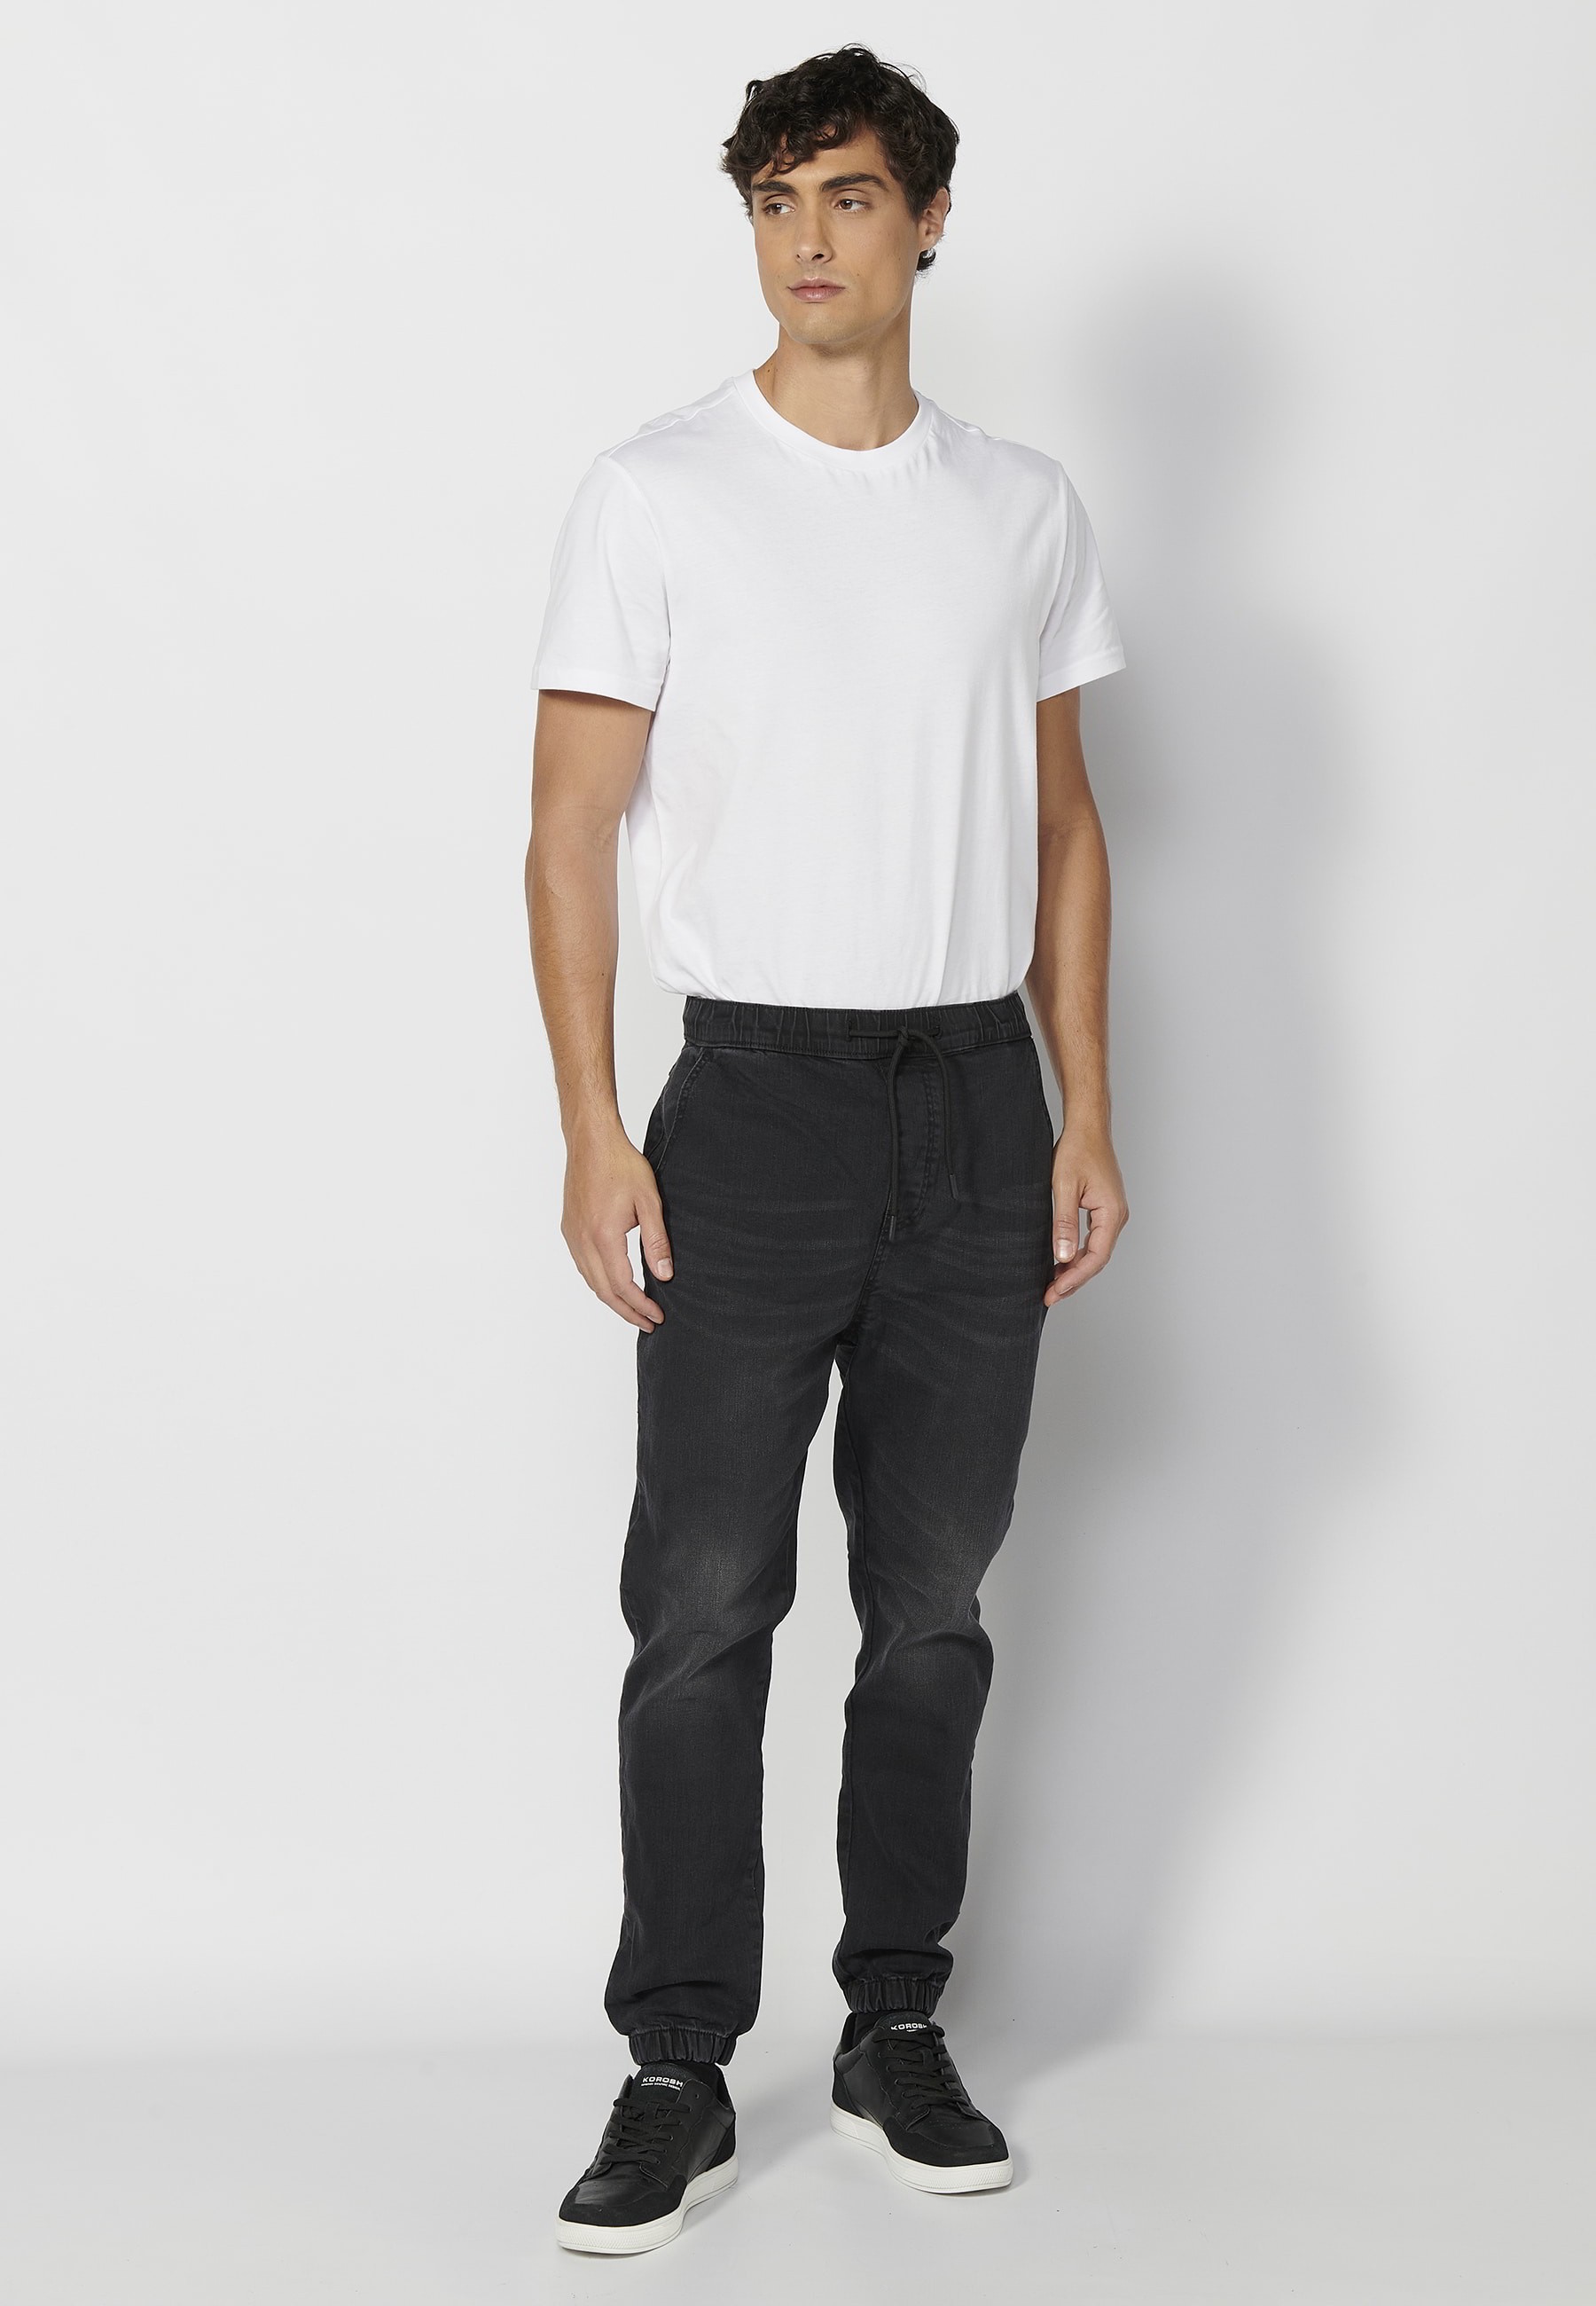 Pantalón Deportivo largo jogger cintura elástica color Negro para Hombre